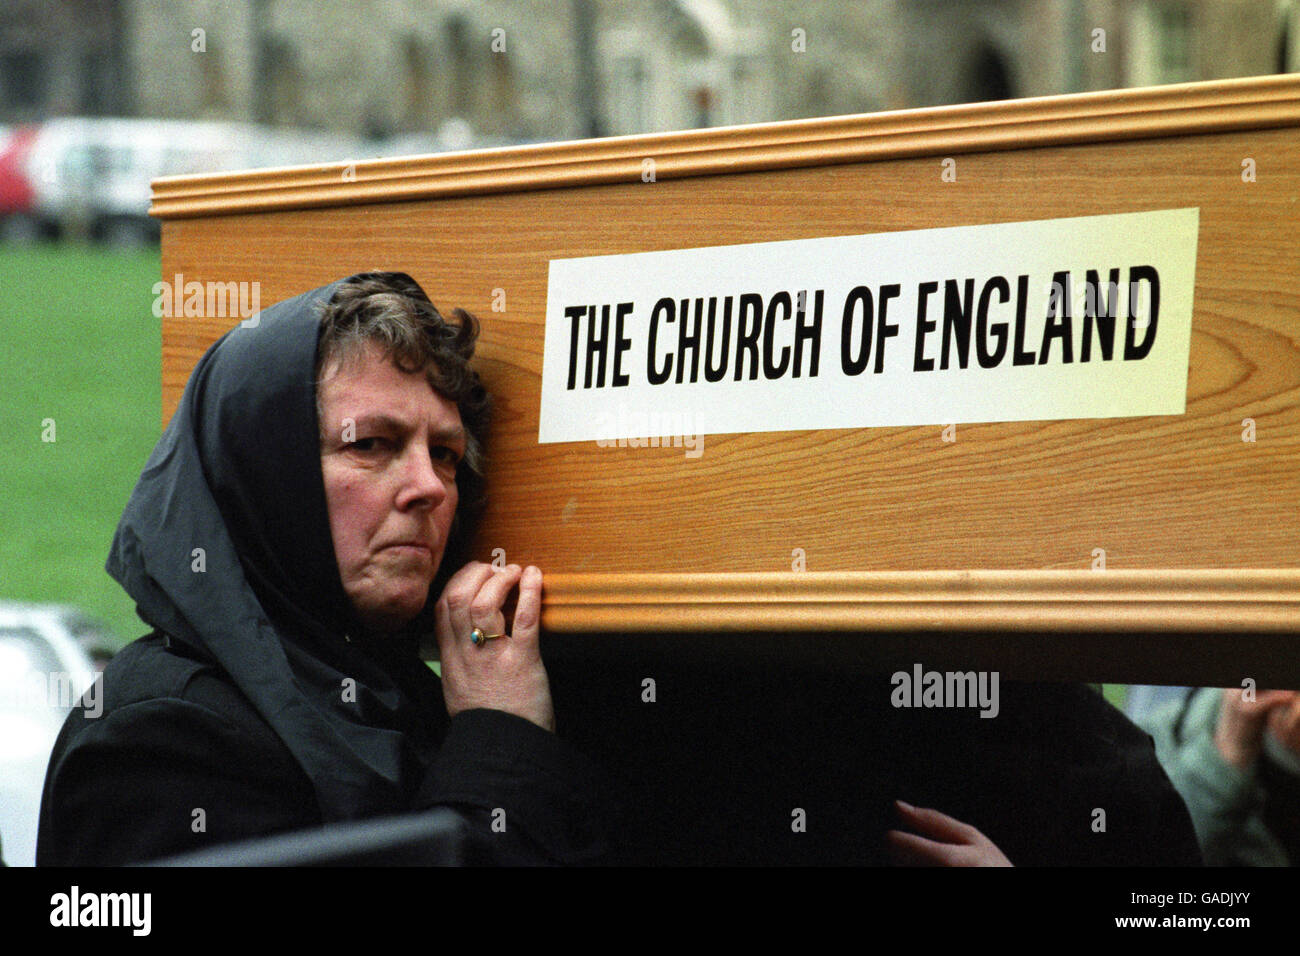 Une femme aide à porter un cercueil pour symboliser les 'derniers rites de l'Église d'Angleterre'. L'Ecclesia, dirigé par le Père Francis Bown, a organisé la manifestation le jour de la réunion générale du Synode à Westminster. Banque D'Images